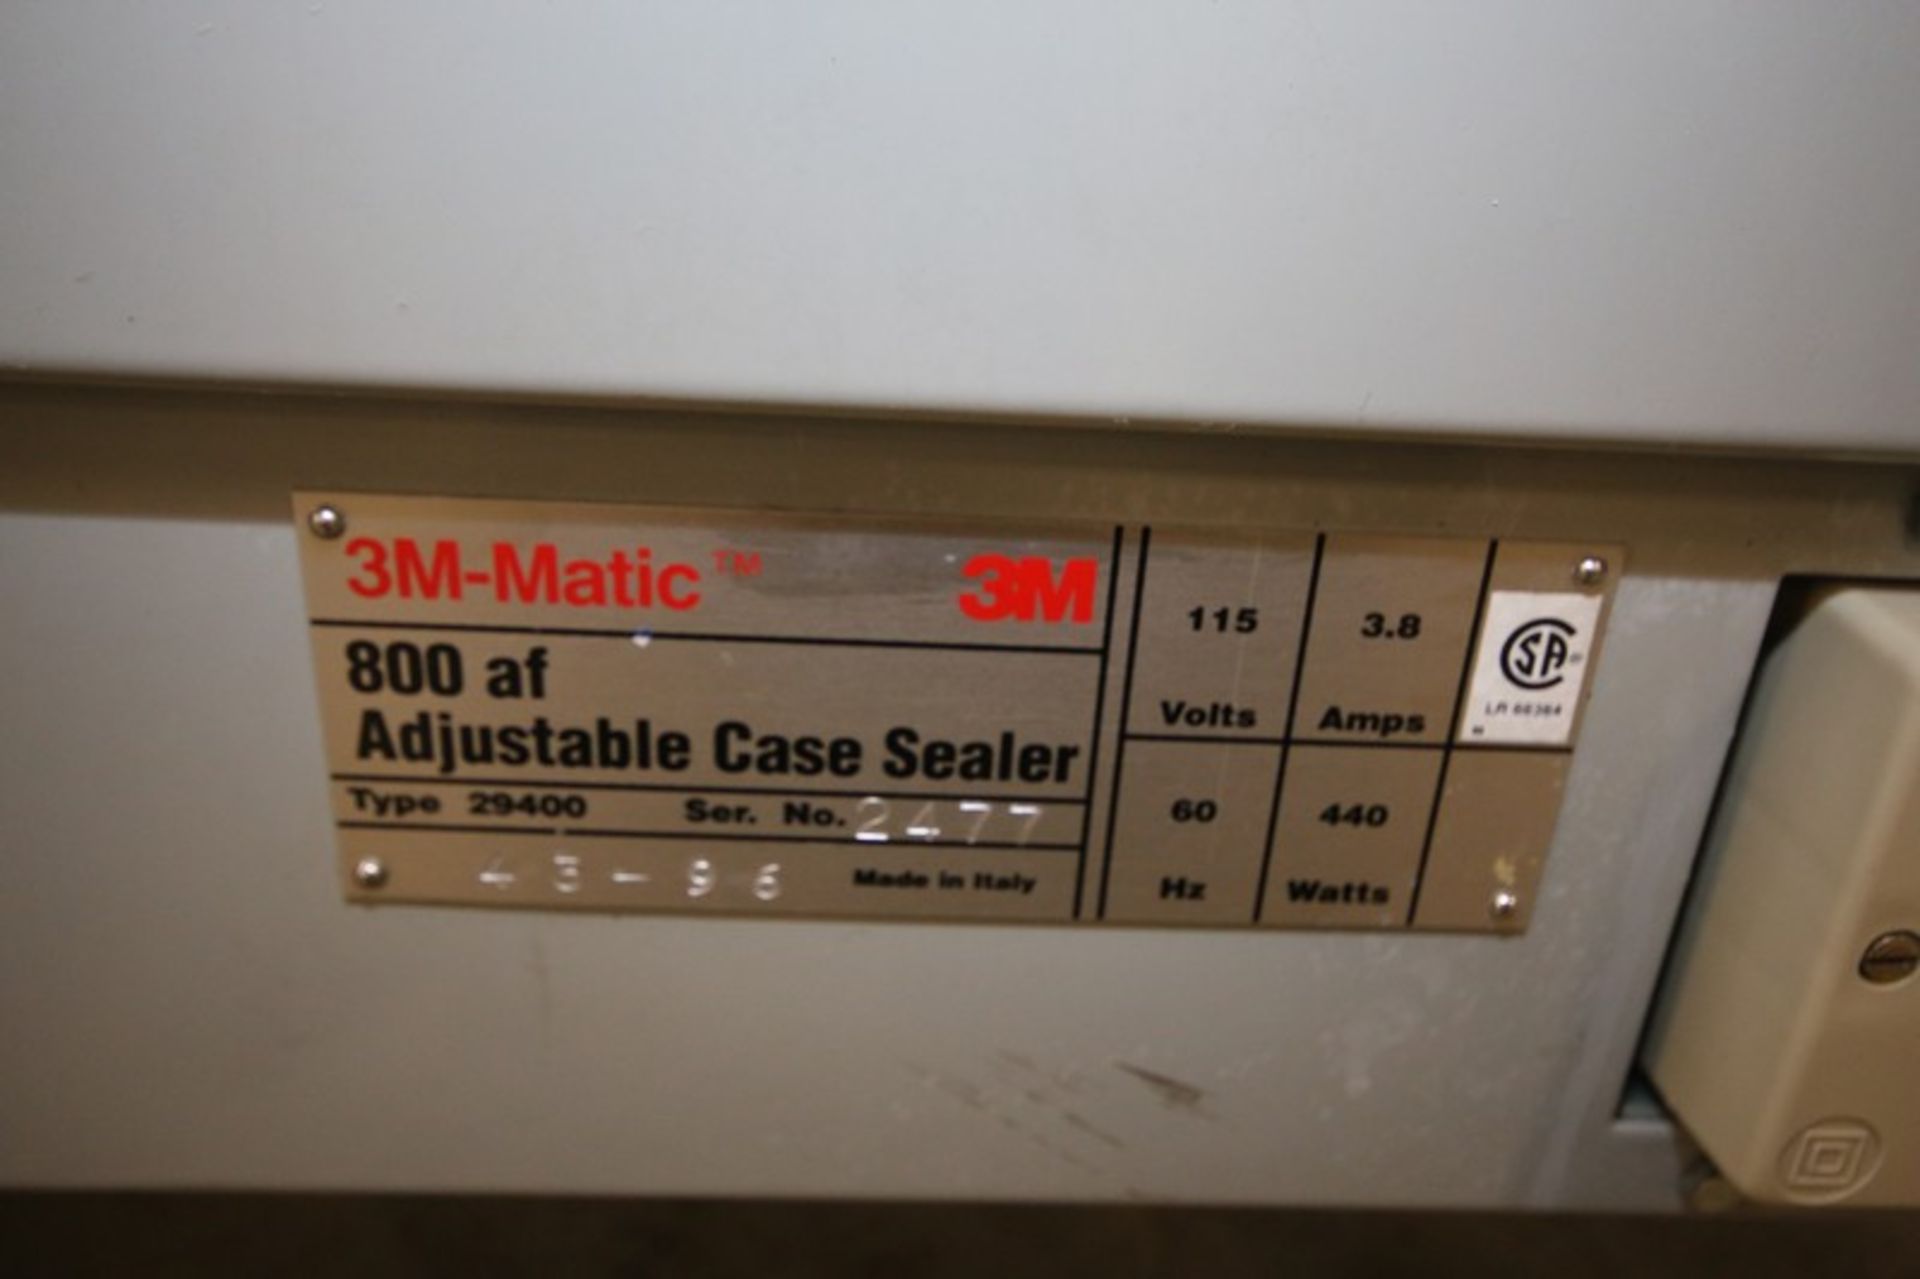 3M Matic Adjustable Case Sealer, Model 800af, Type 29400, SN 2477, 115V, Includes Top Cartridge ( - Bild 5 aus 5